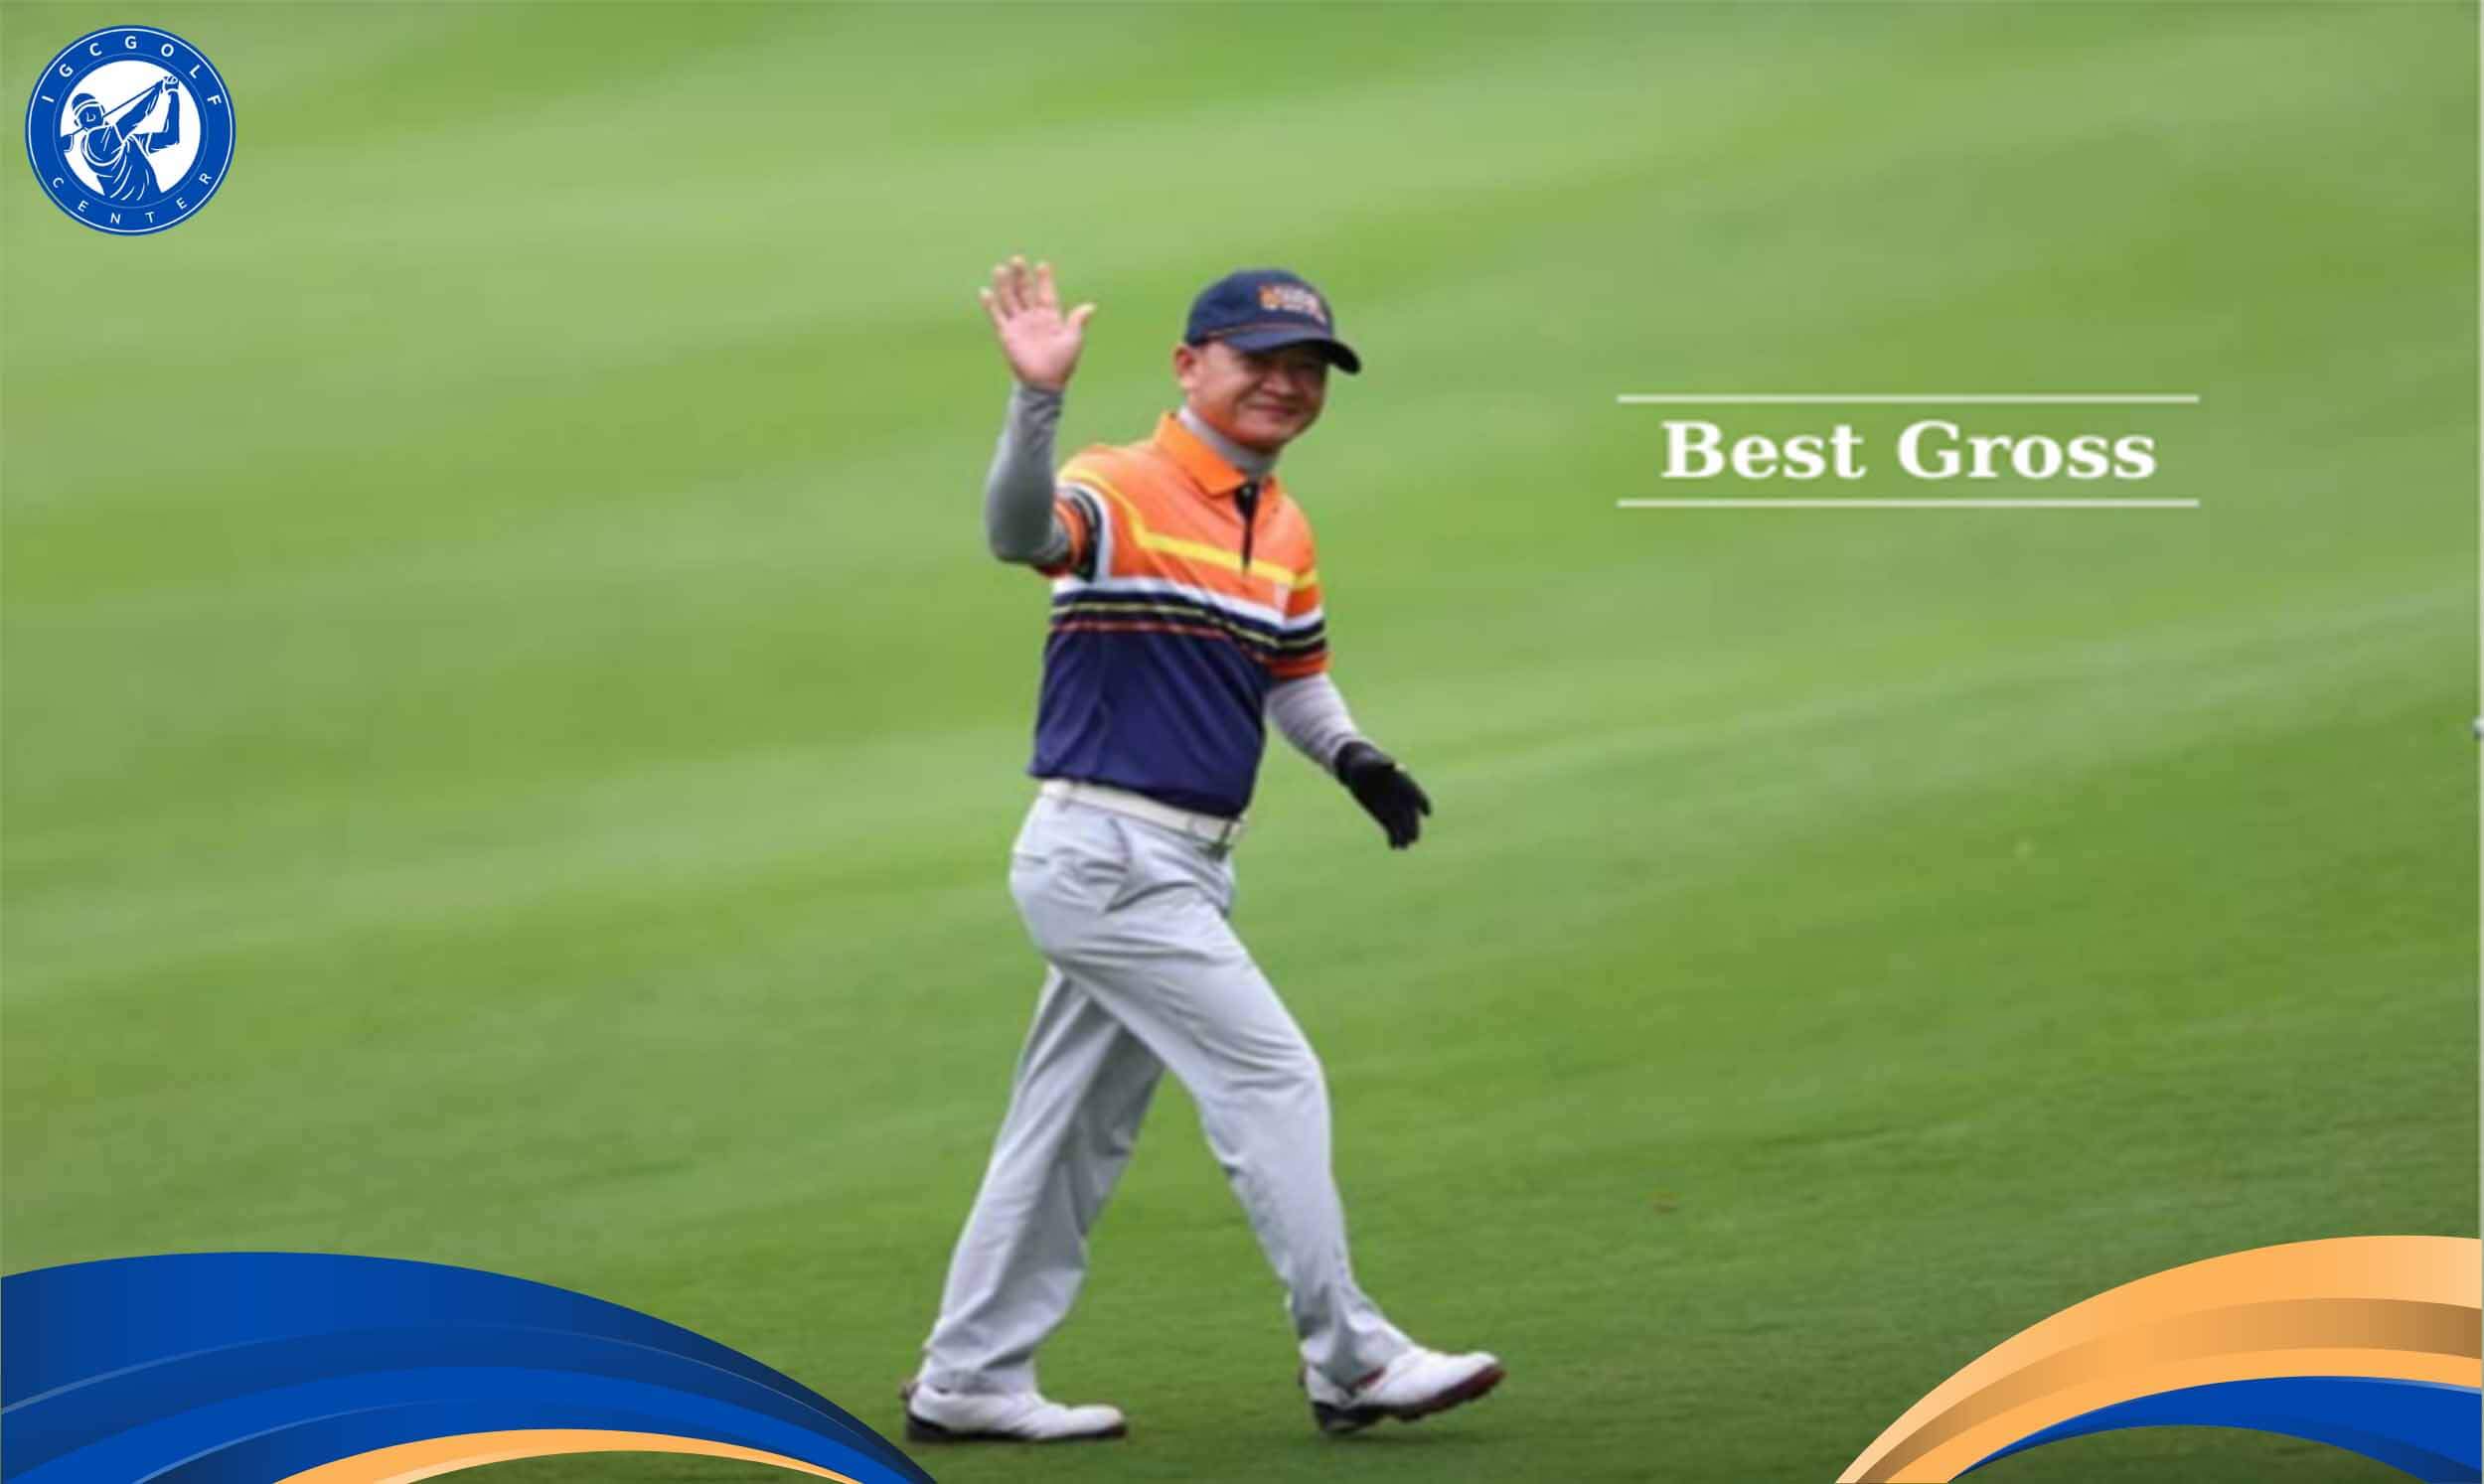 Giải đáp best golf trong golf là gì